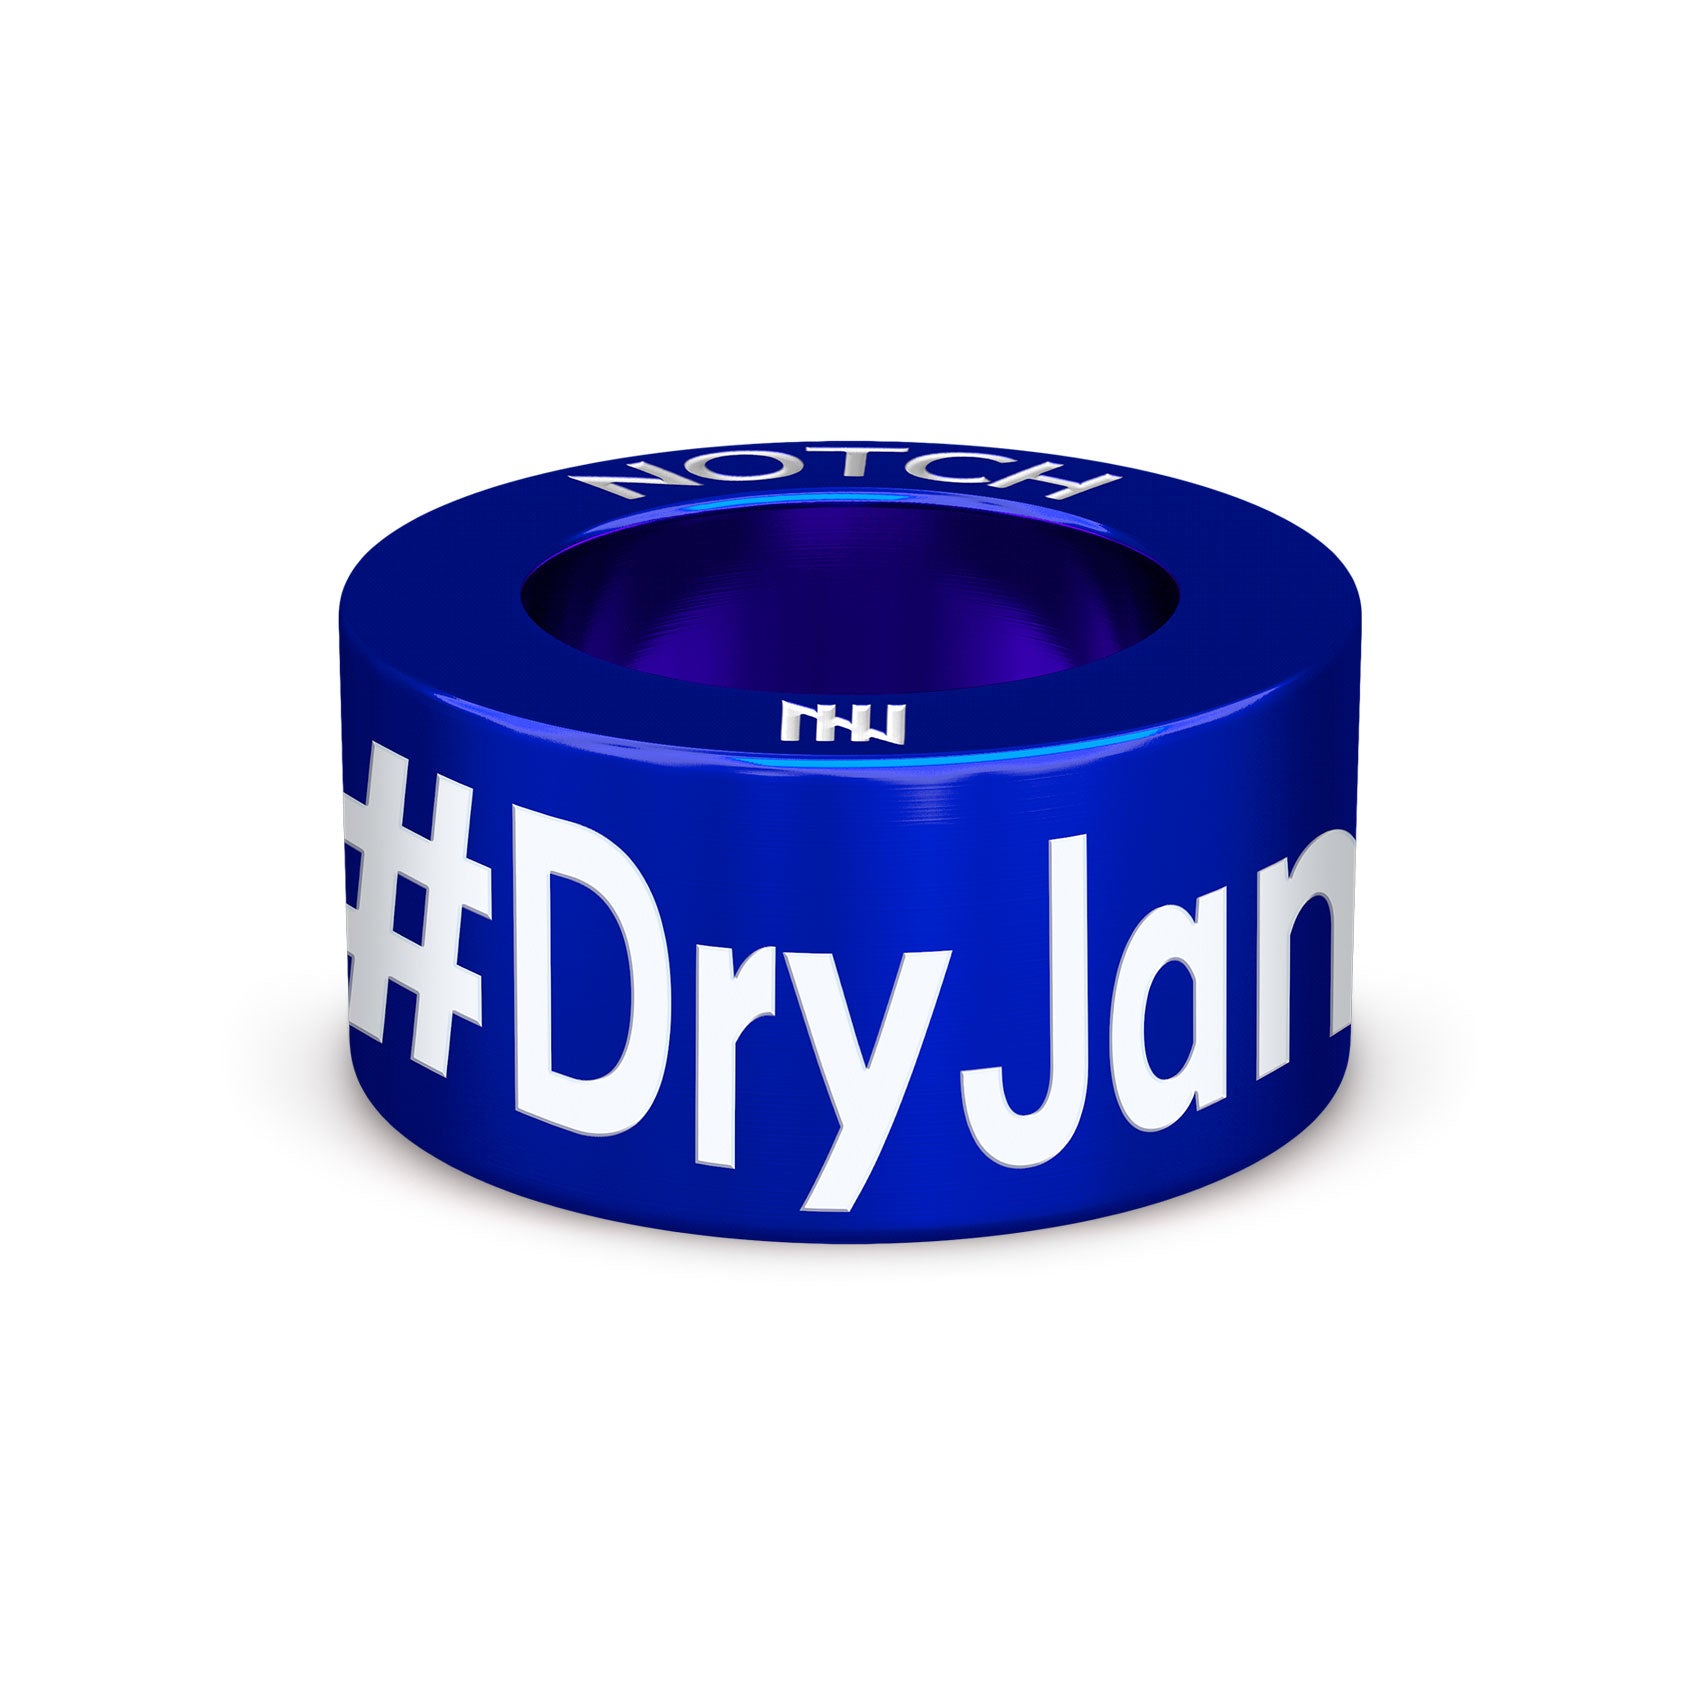 #DryJanuary NOTCH Charm